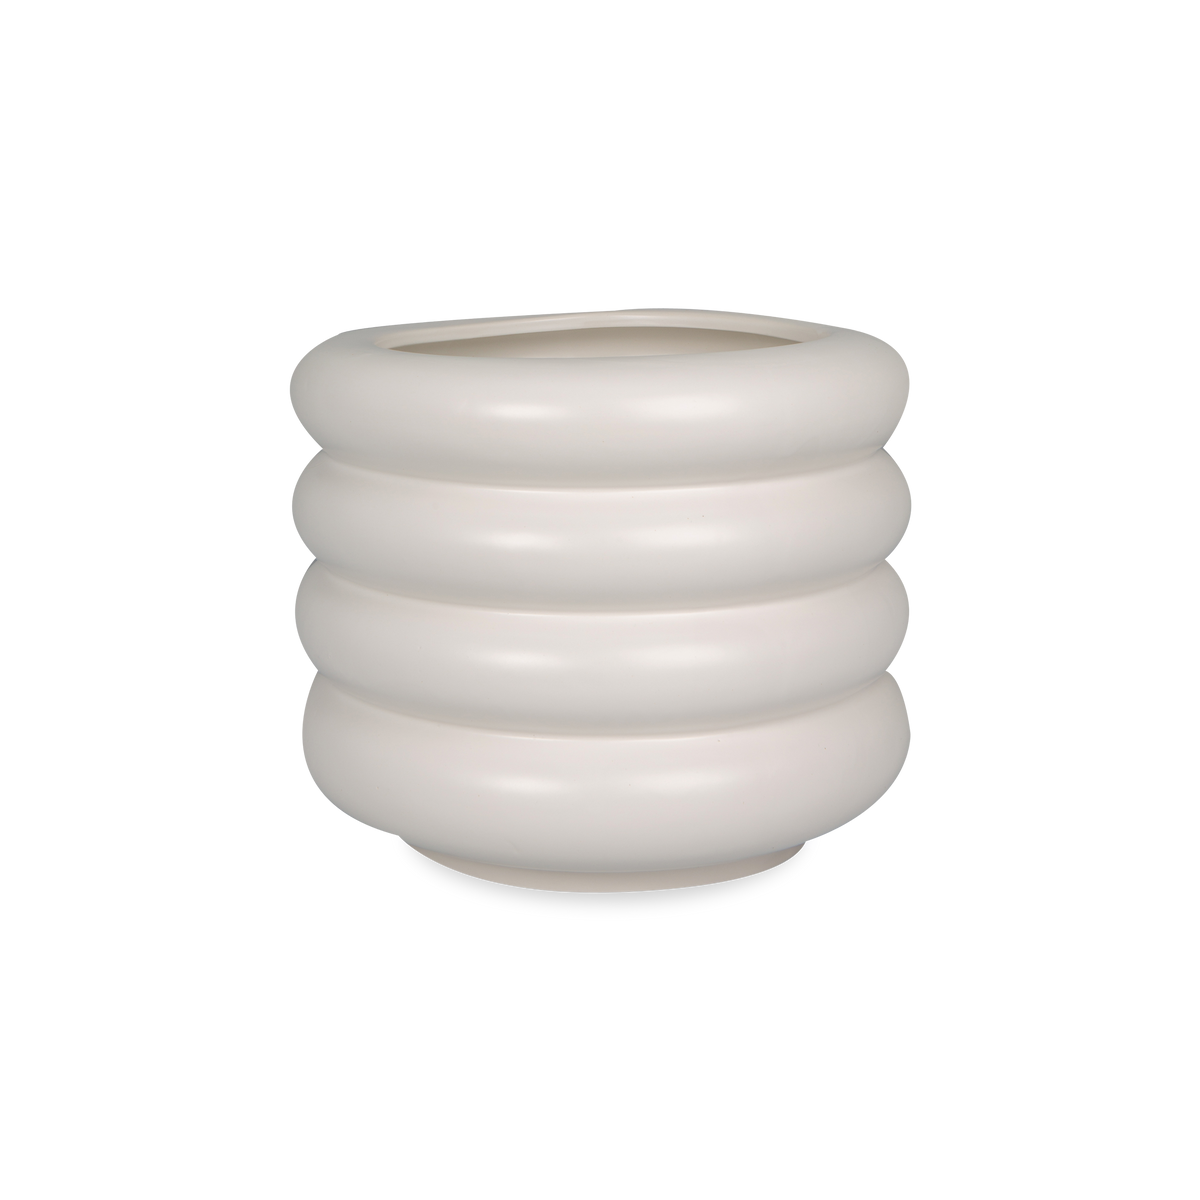 Bubbled Ceramic Vase is glazed in white.